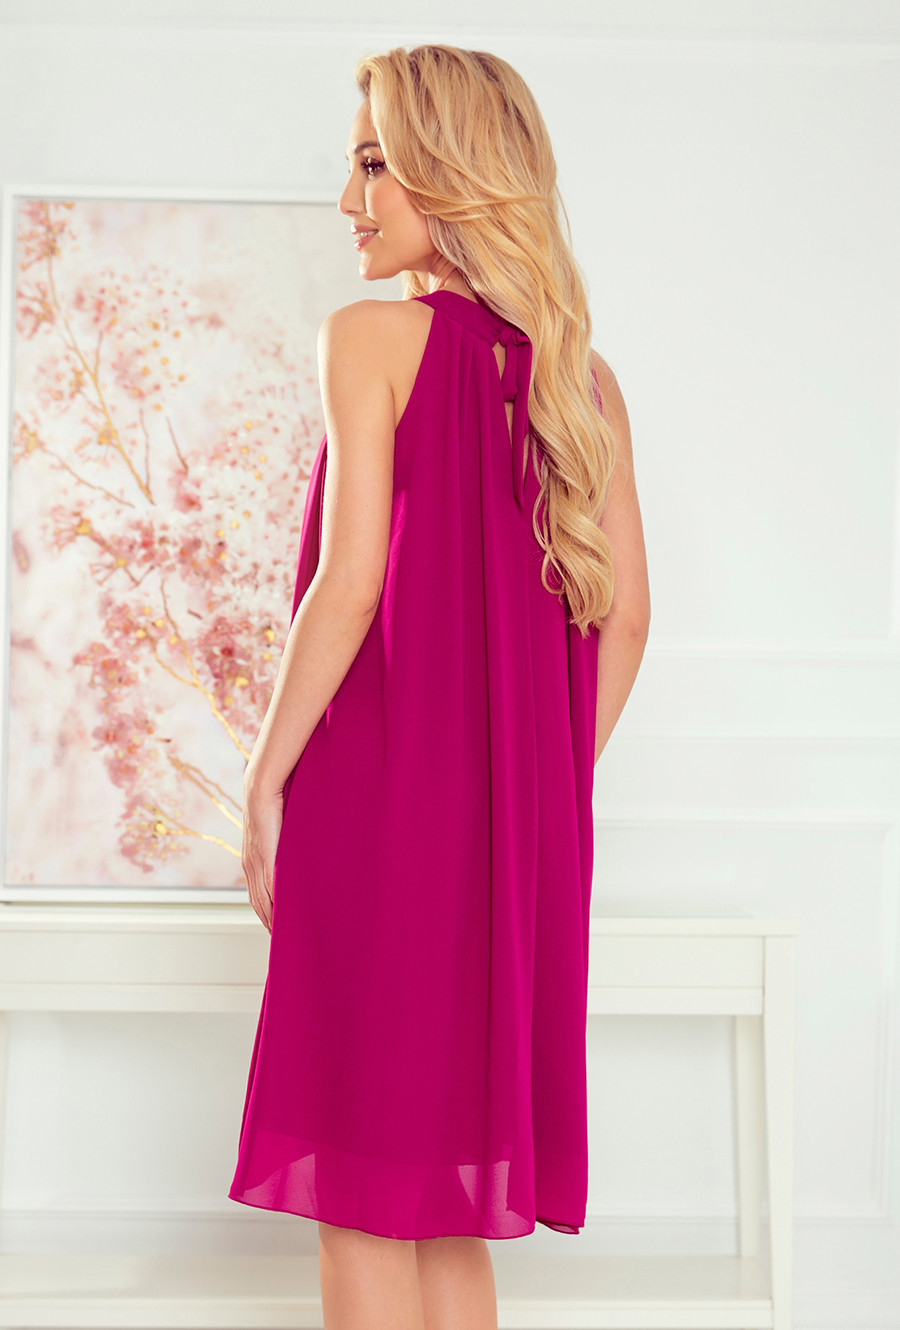 ALIZEE - Dámské šifonové šaty ve fuchsiové barvě se zavazováním 350-7 L